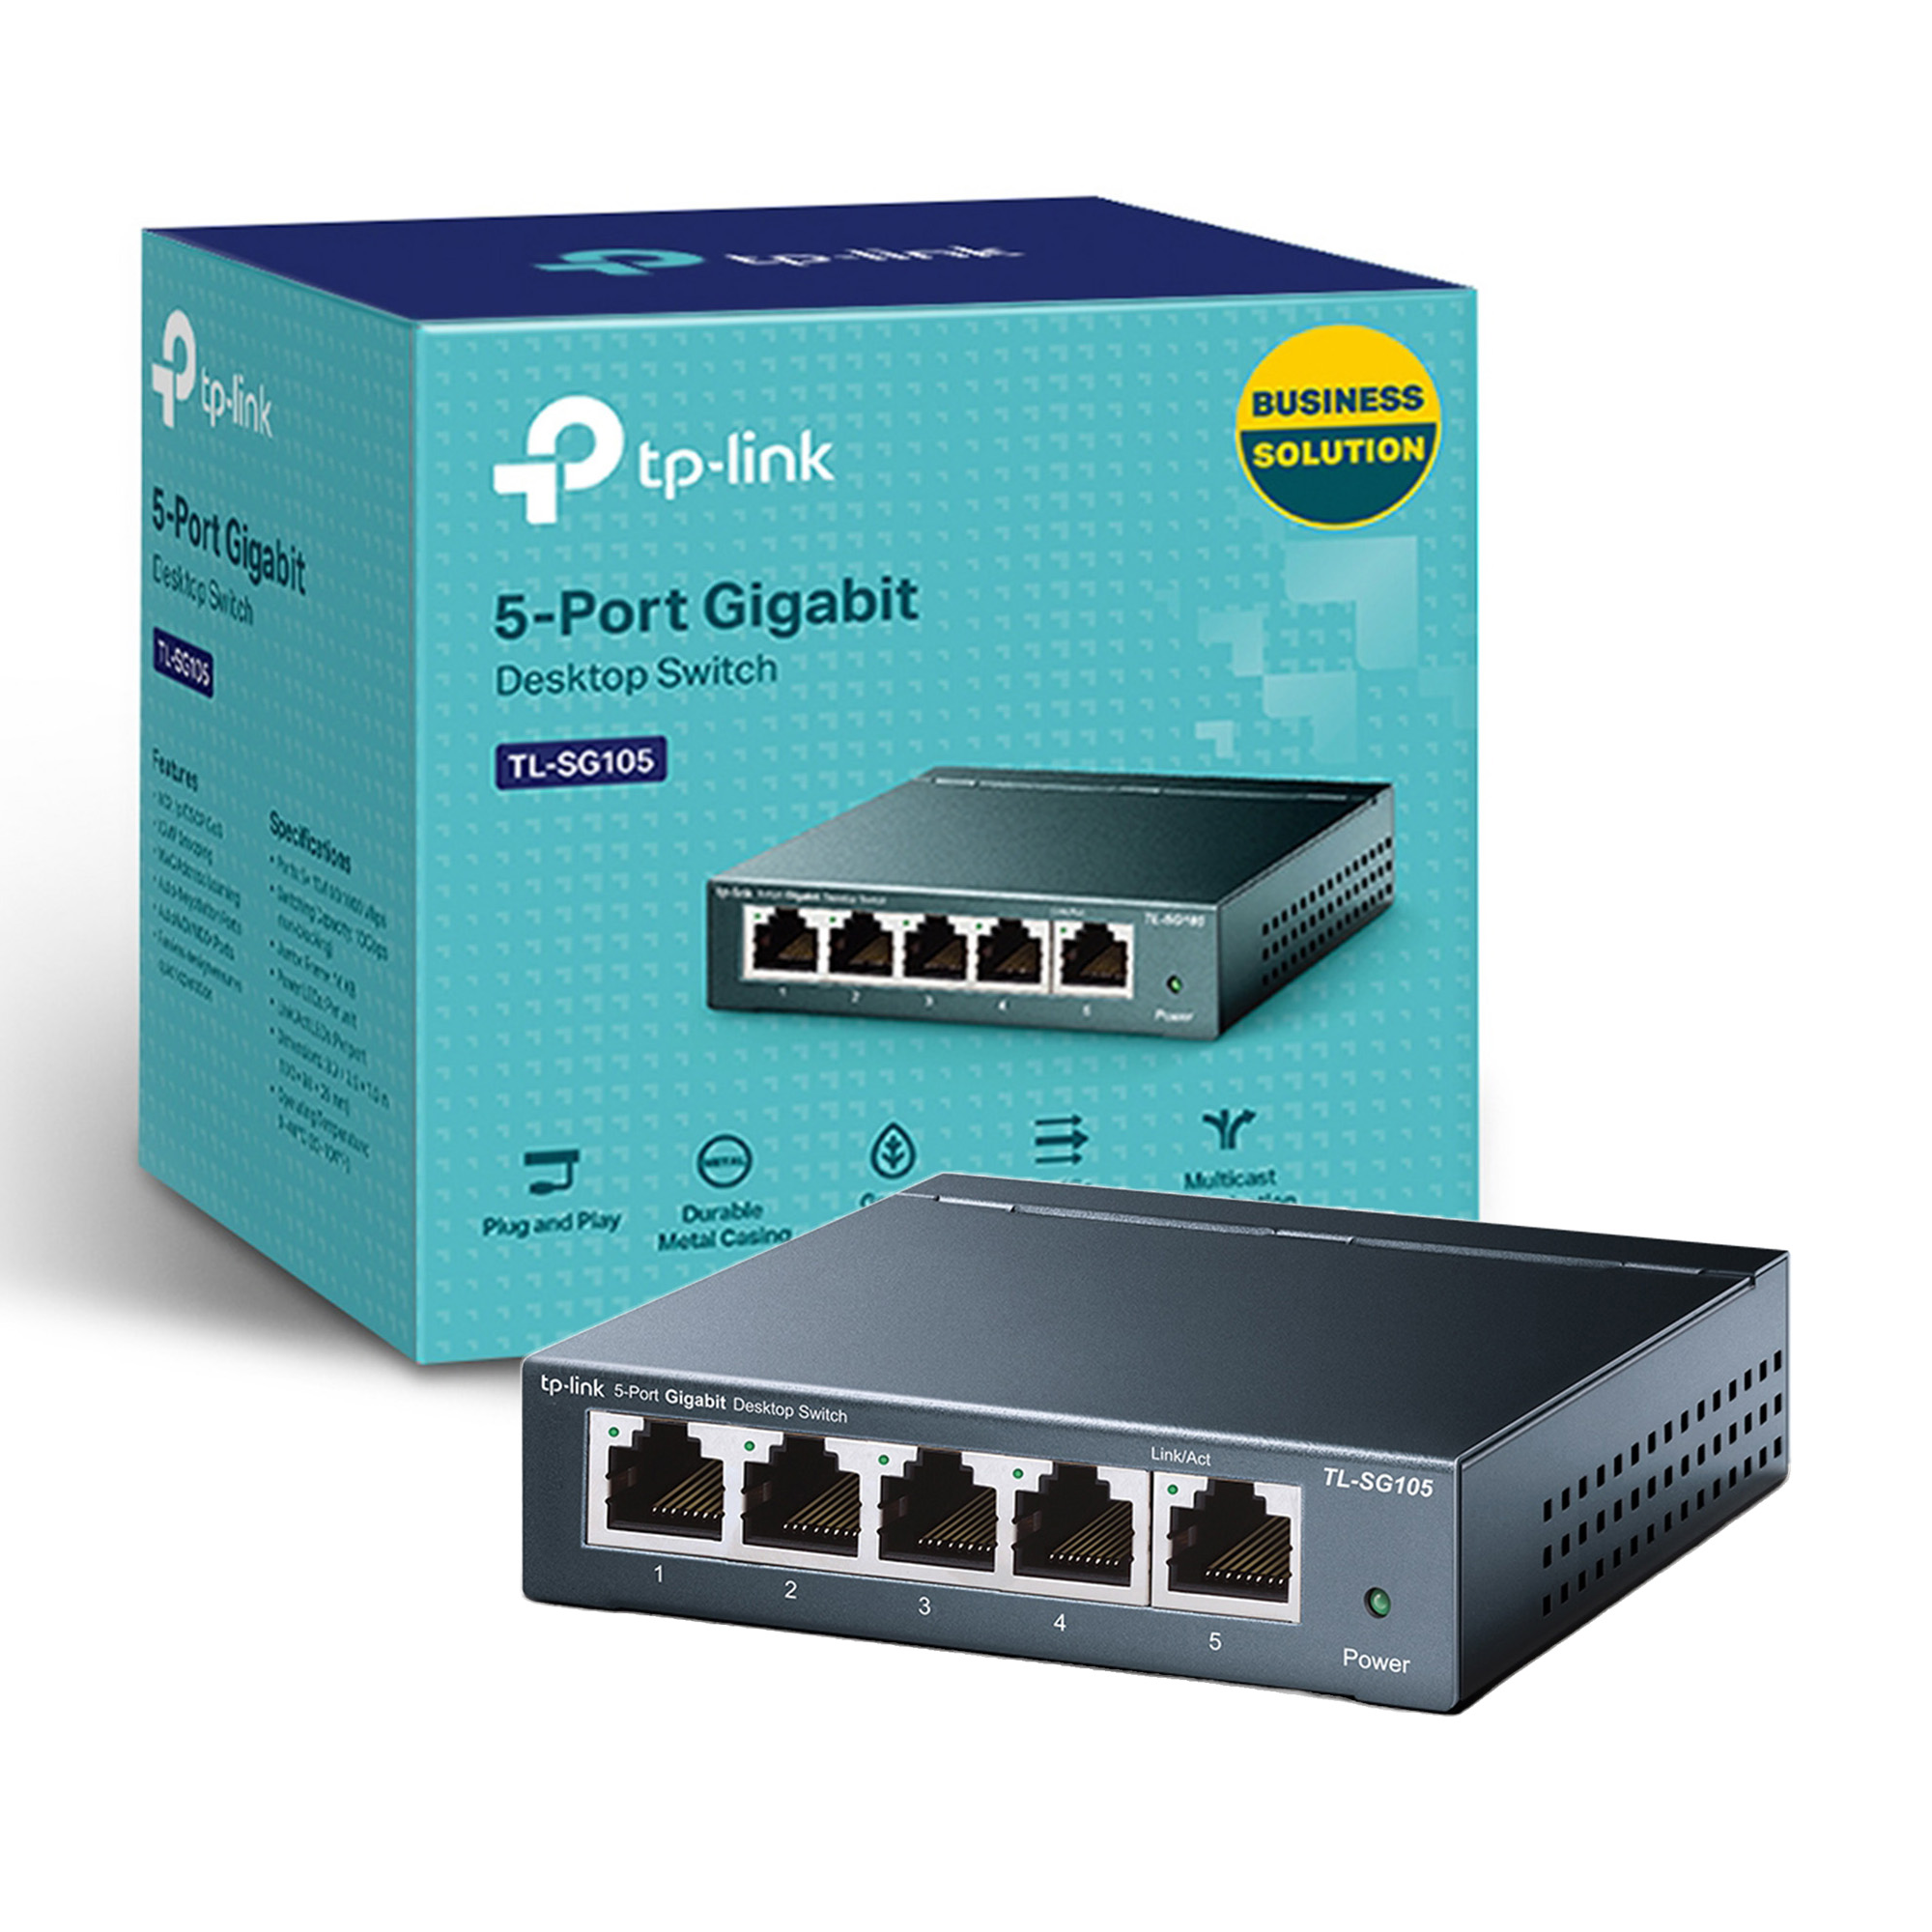 TP-Link 5 Port 10/100 Mbps Fast Ethernet Switch